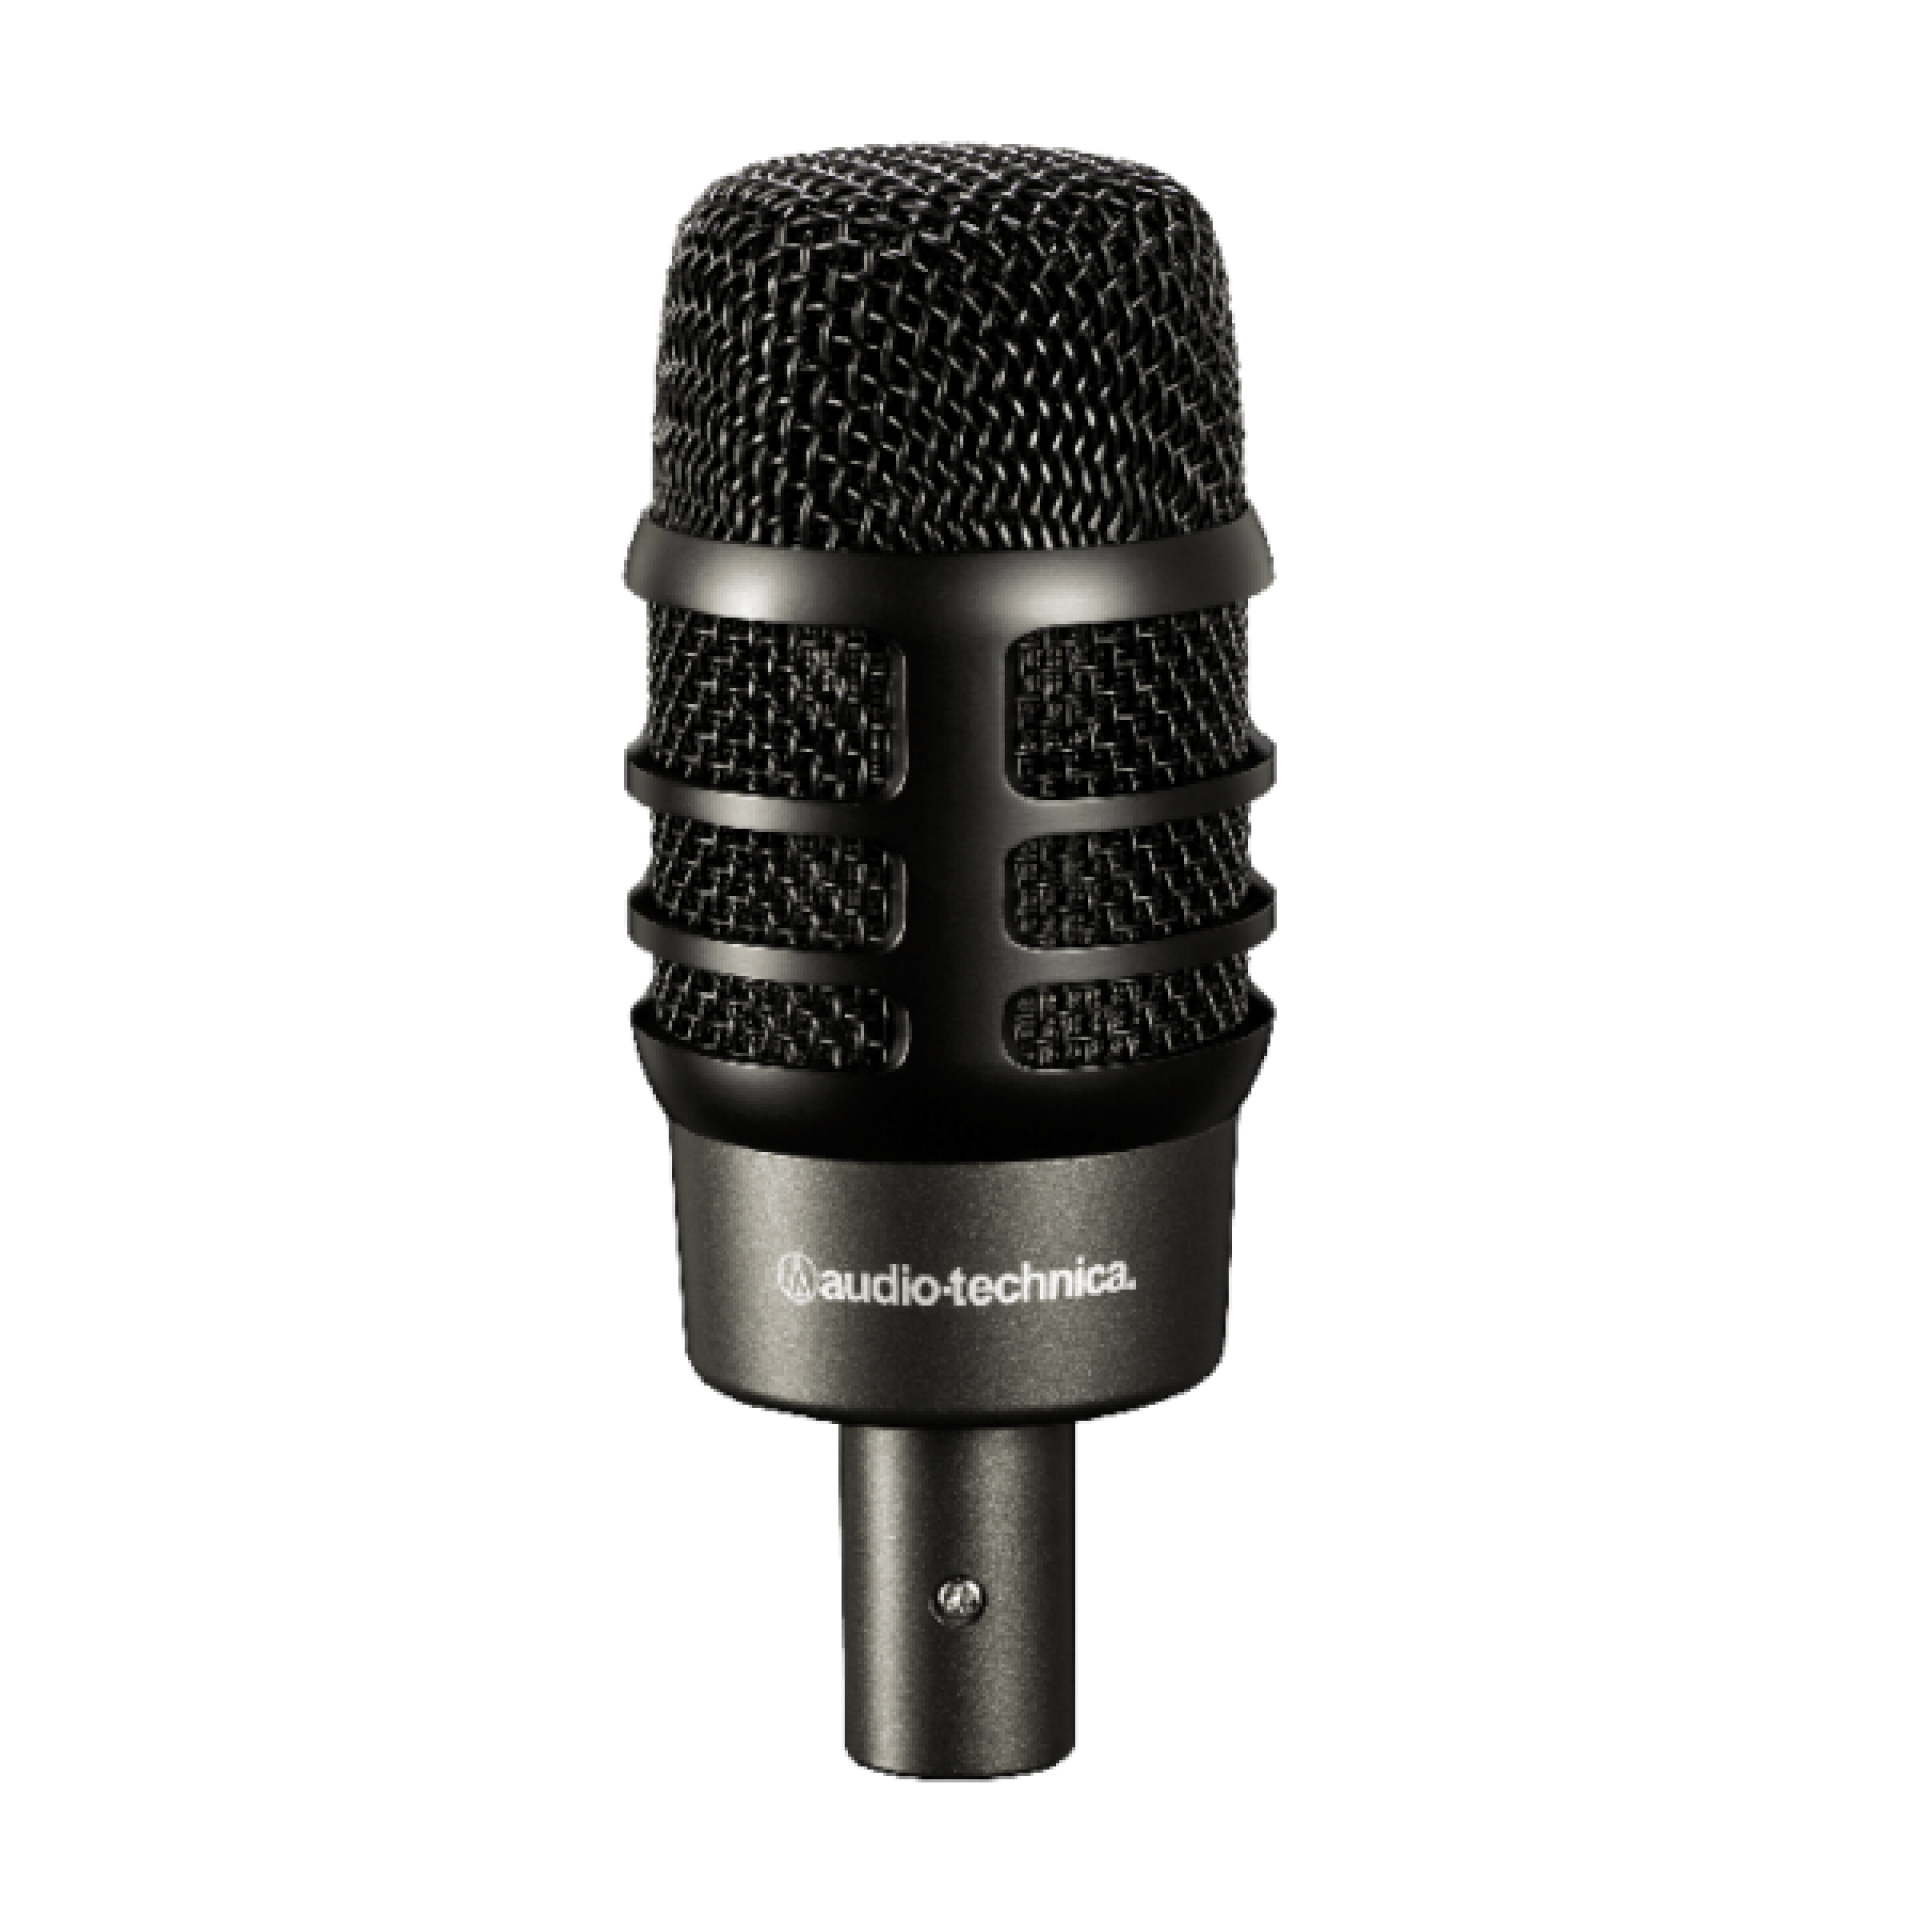 Audio-Technica Instrument Microphones - atm250de